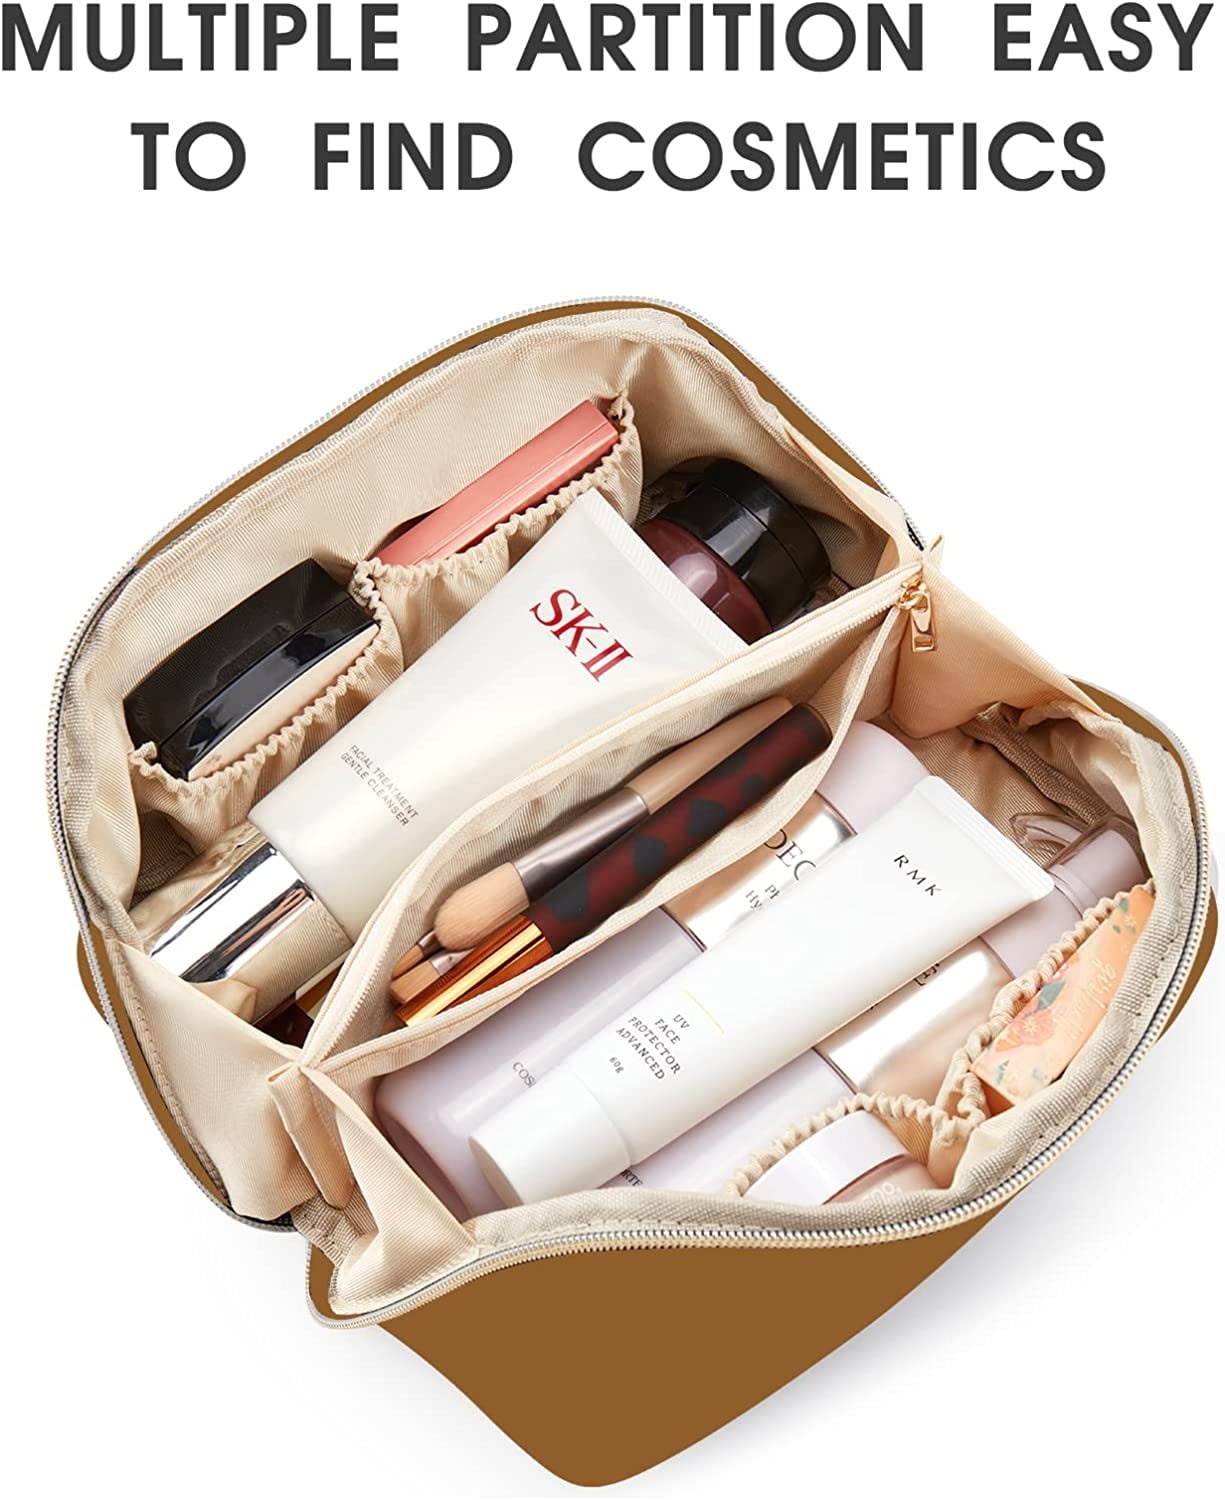 Make-up bag for €5 - Accessories - Hunkemöller